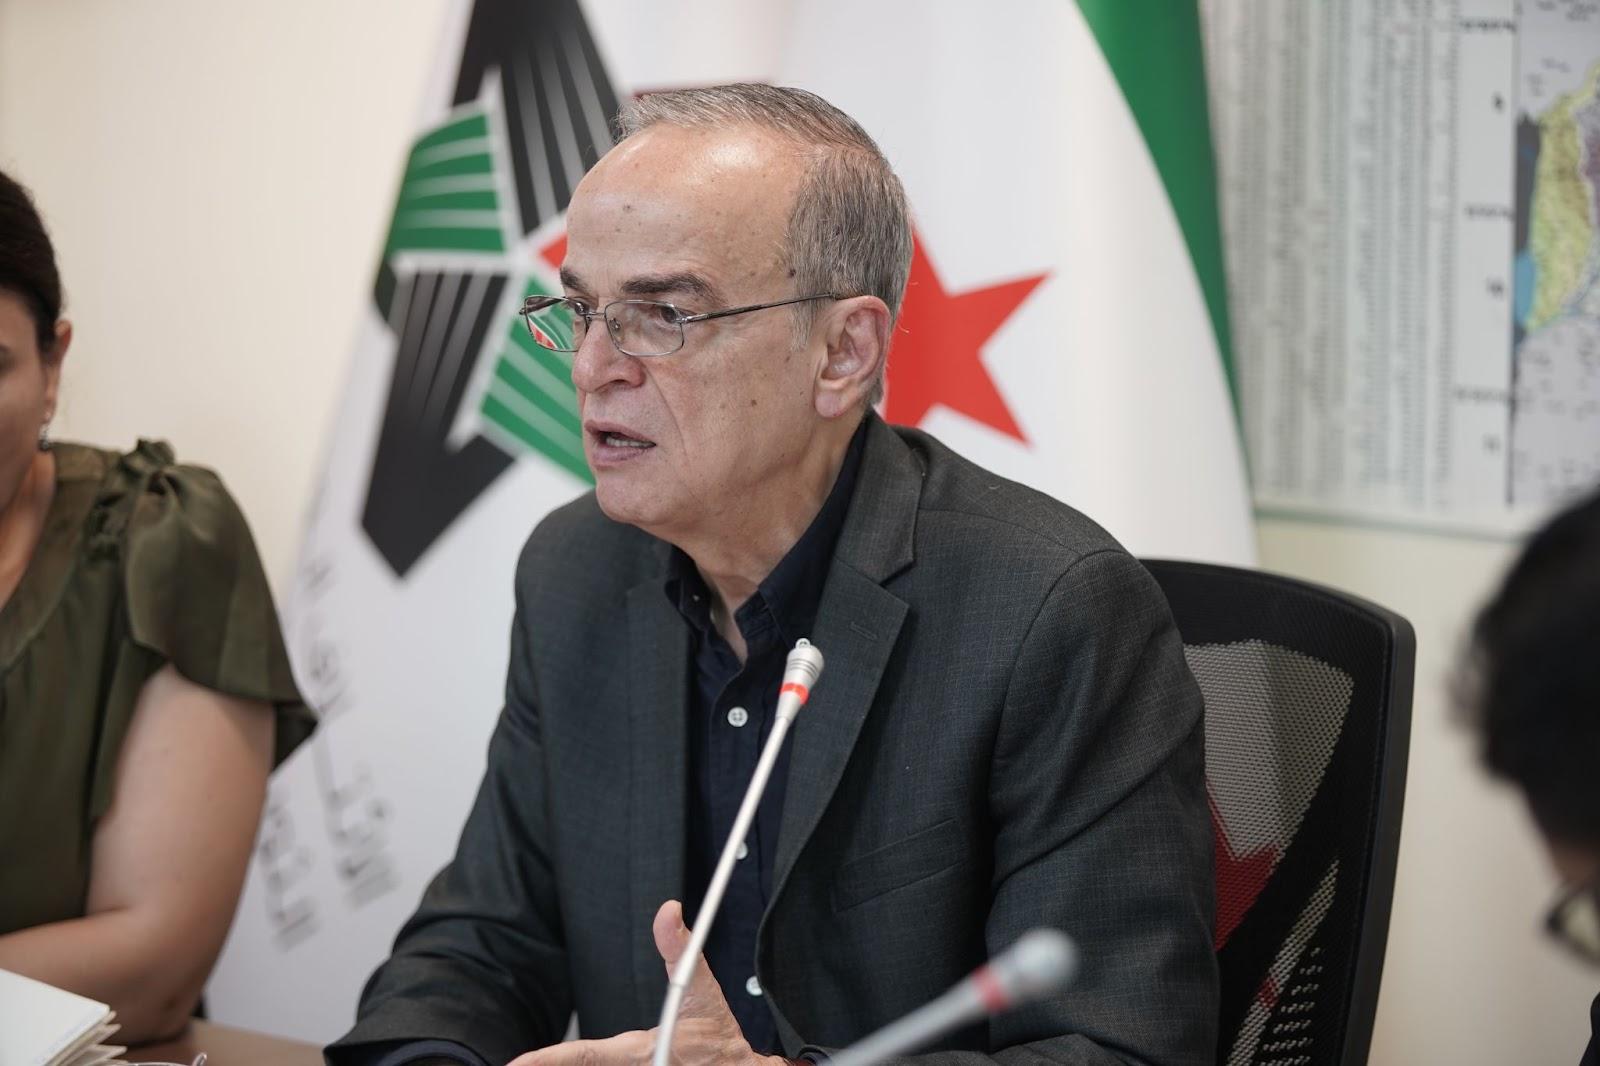 البحرة يعلق على أنباء تلقي مؤسسات المعارضة عروضاً للاتفاق مع النظام السوري